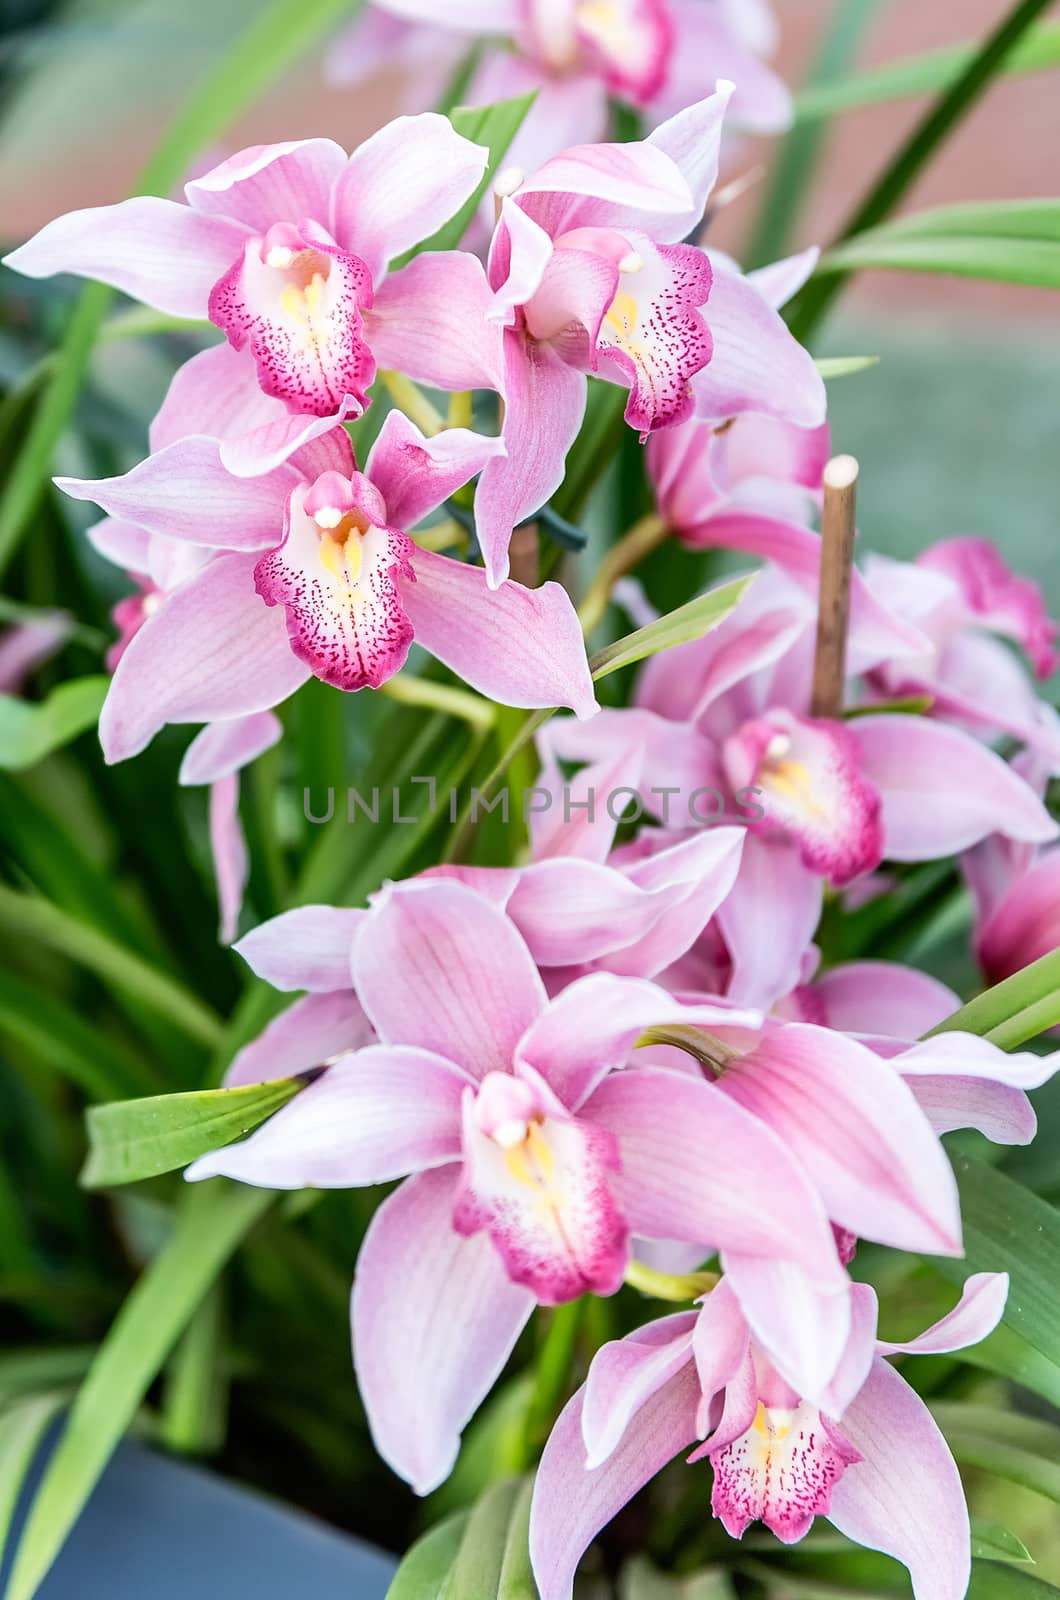 Beautiful pink phalaenopsis orchids  by marcorubino